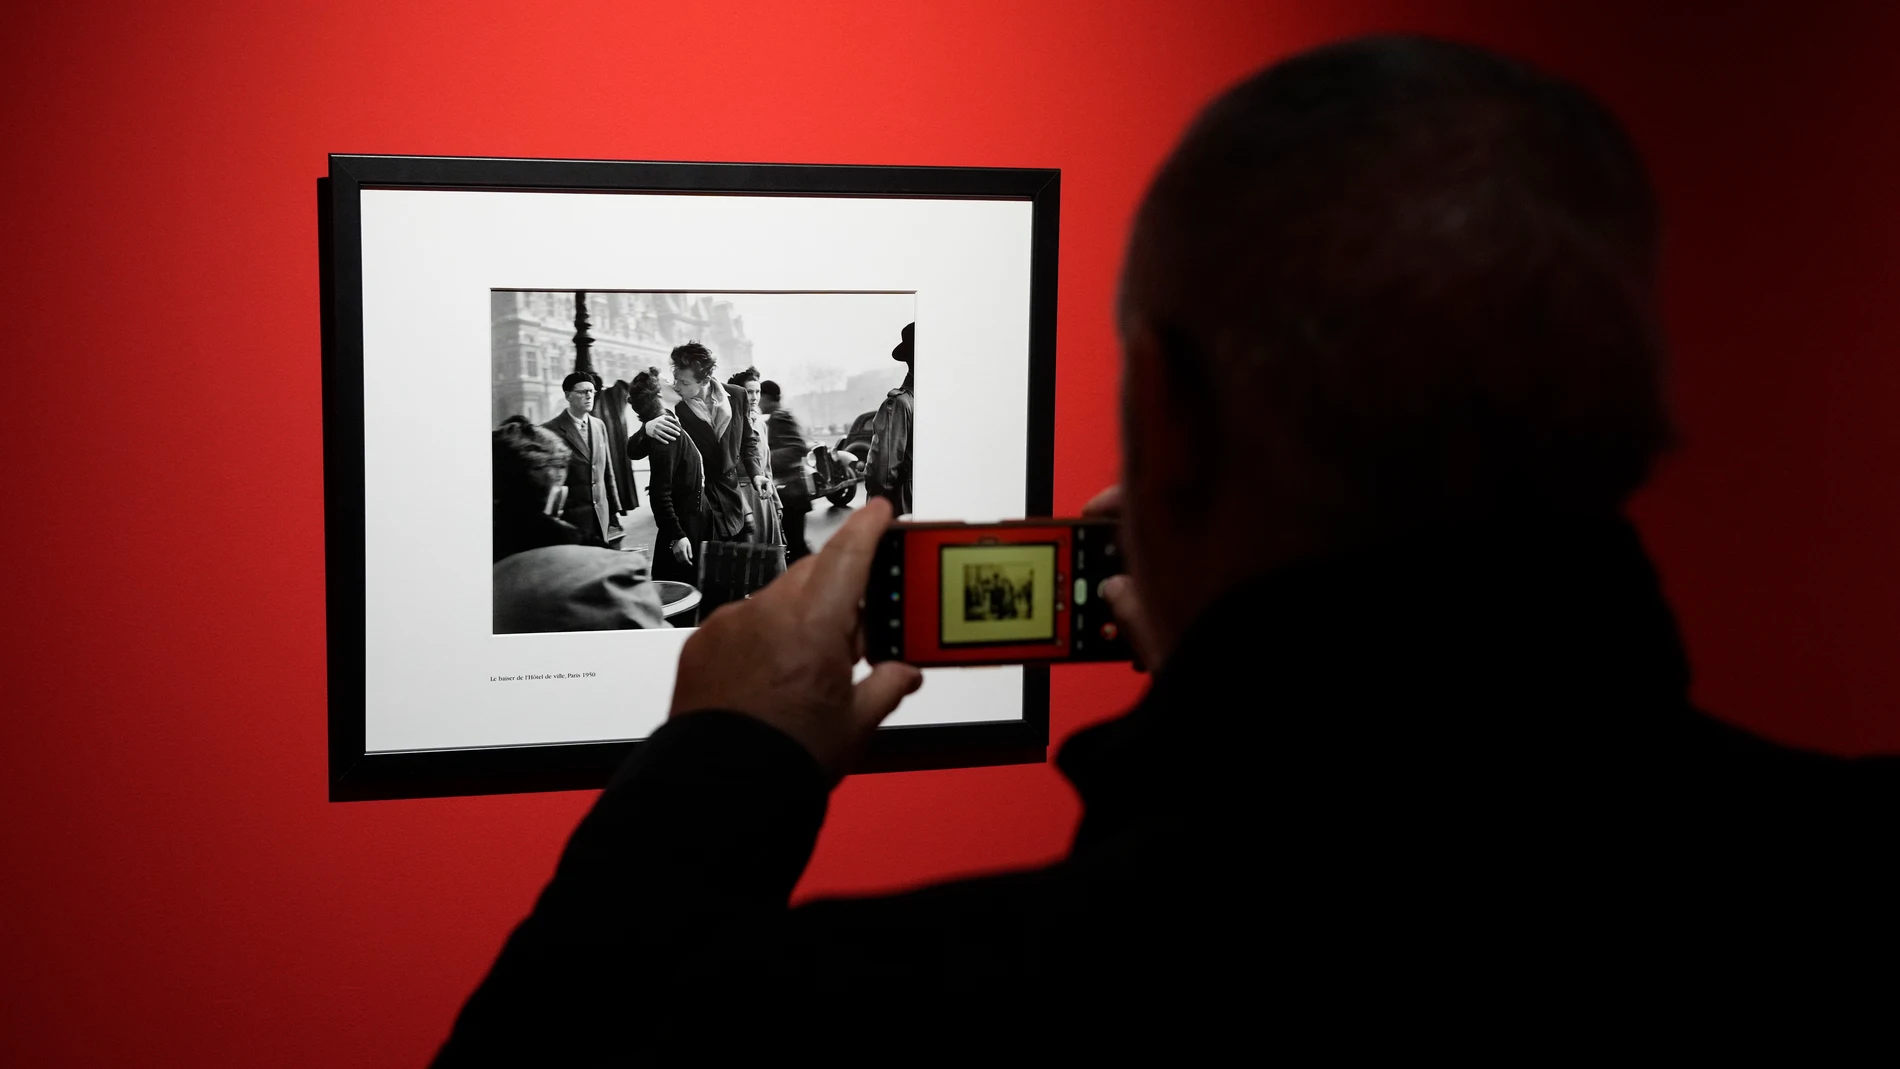 Foto Nostrum reúne medio centenar de las fotografías más icónicas del francés Robert Doisneau en una exposición, entre ellas el famoso beso "Le Baiser de l'Hôtel de Ville"